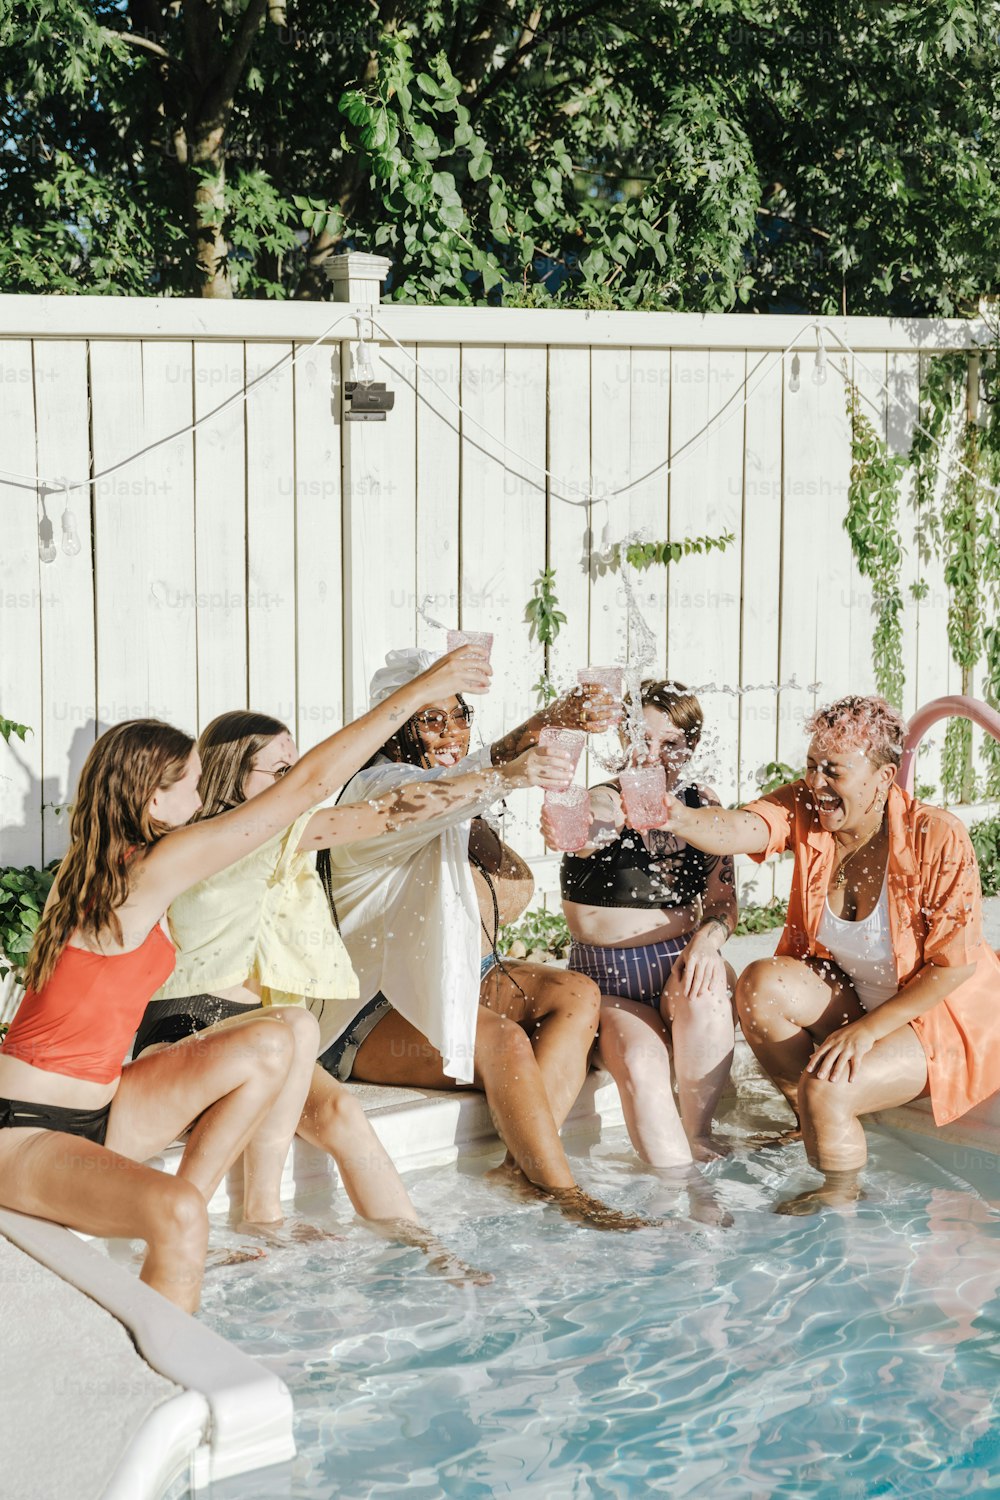 Un grupo de personas sentadas alrededor de una piscina bebiendo champán